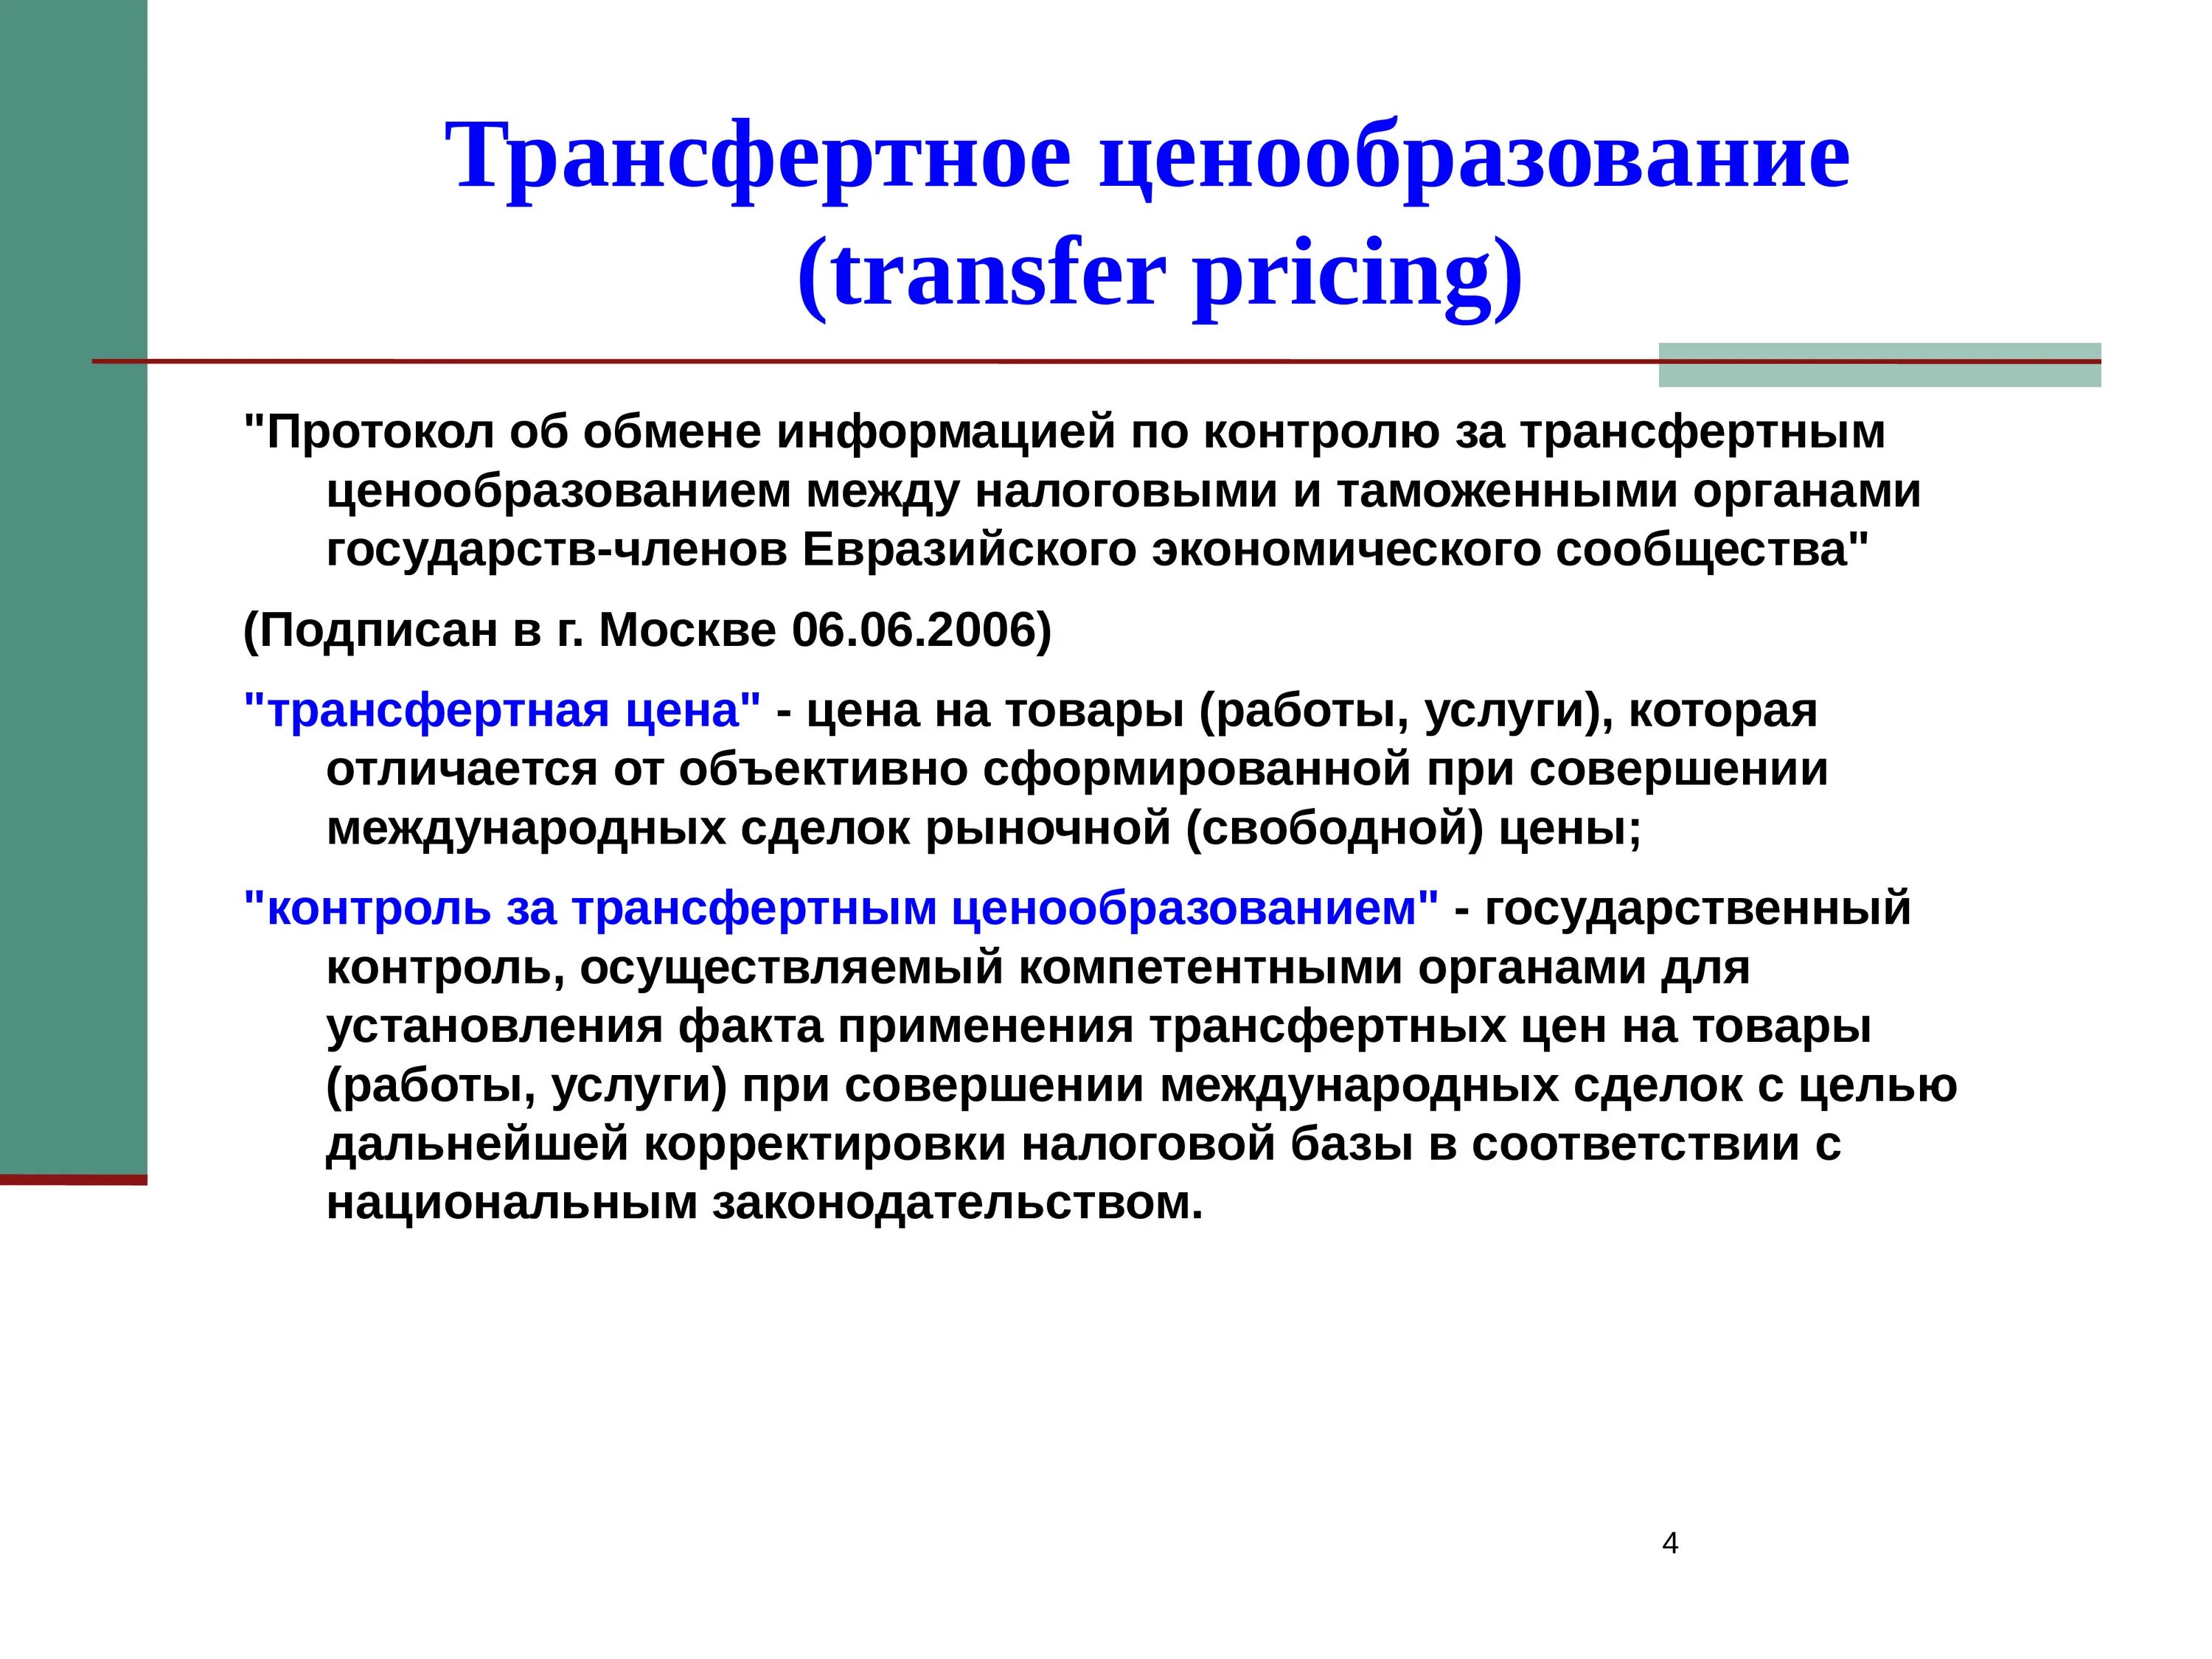 Транспортное ценообразование. Трансфертное ценообразование. Методы трансфертного ценообразования. Методика трансфертного ценообразования. Трансферное ценообразование